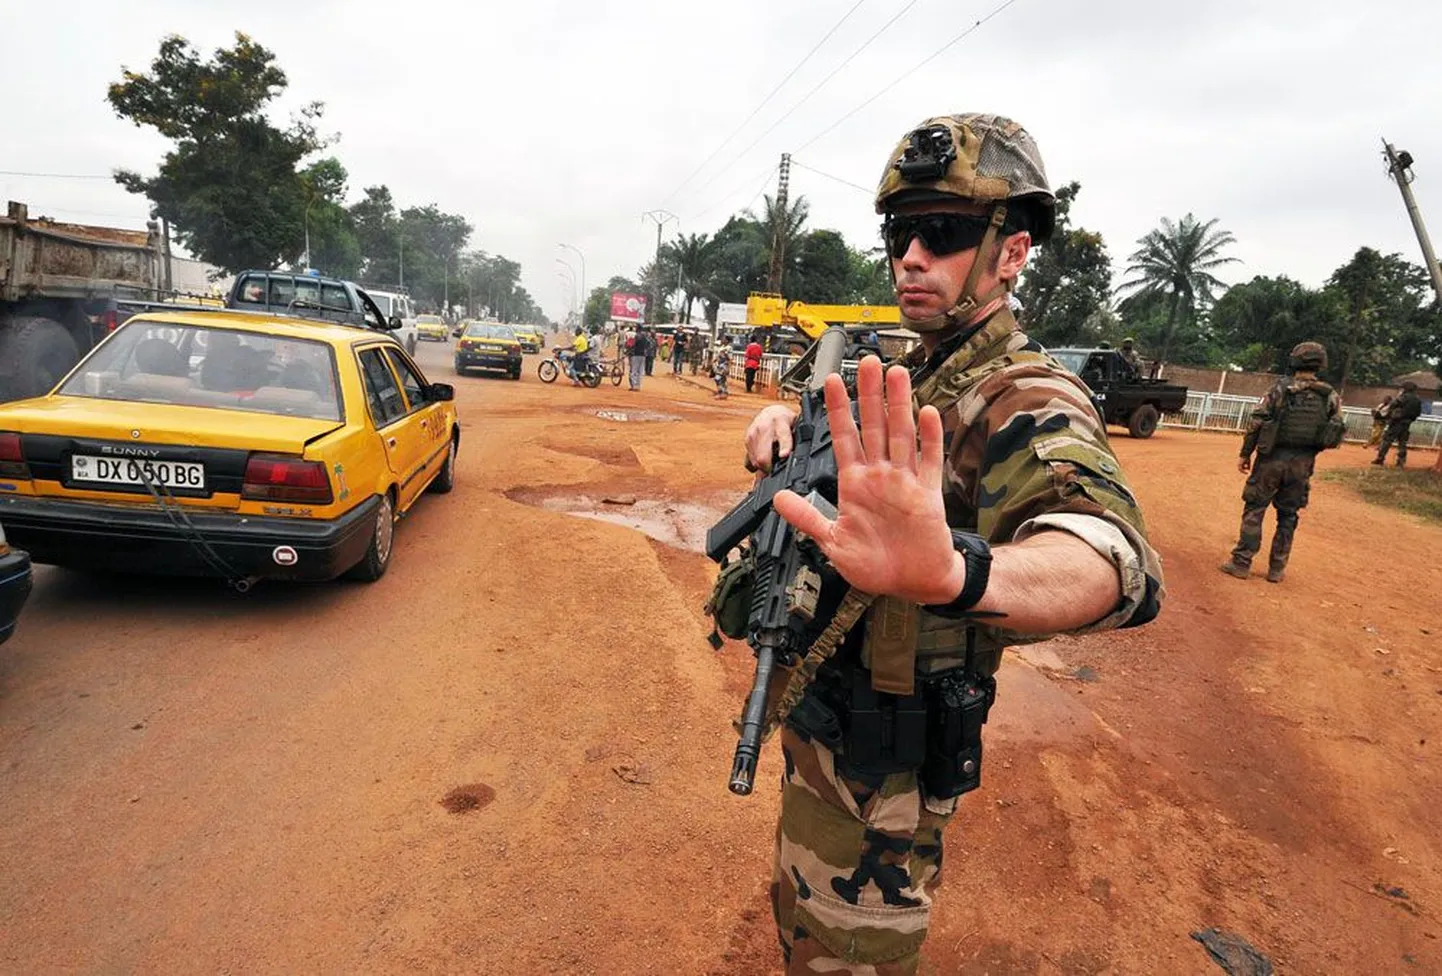 Töö, mida praegu teevad Kesk-Aafrika Vabariigis operatsioonil «Sangaris» teenivad sõdurid, peaksid osaliselt üle võtma Euroopa Liidu riikide üksused.